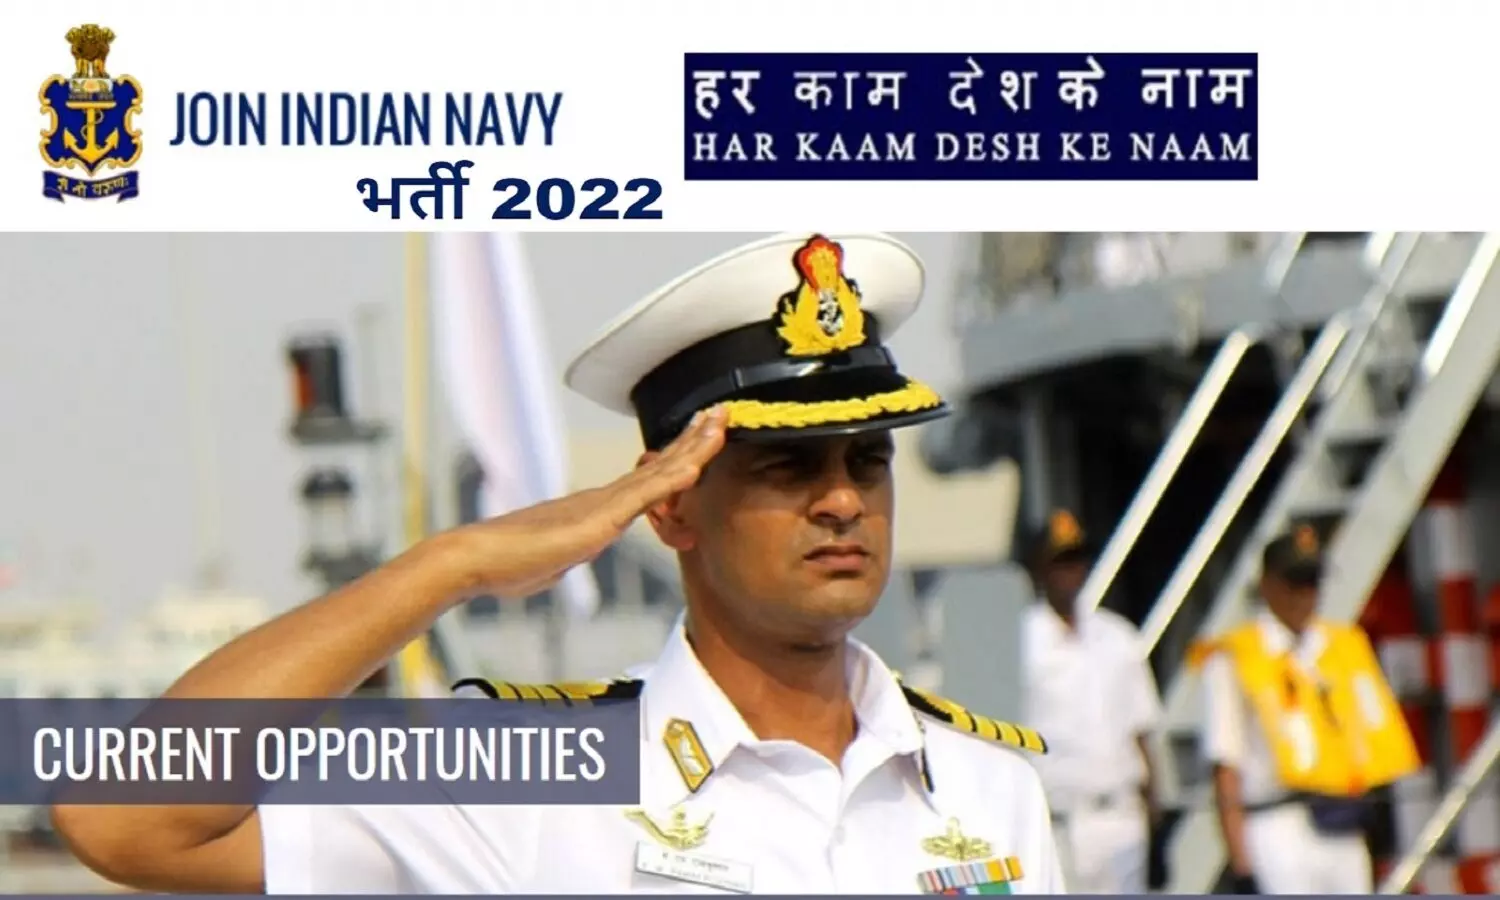 नौसेना भर्ती 2022: 10वीं पास के लिए इंडियन नेवी में भर्ती, एक लाख रुए तक सैलरी मिलेगी